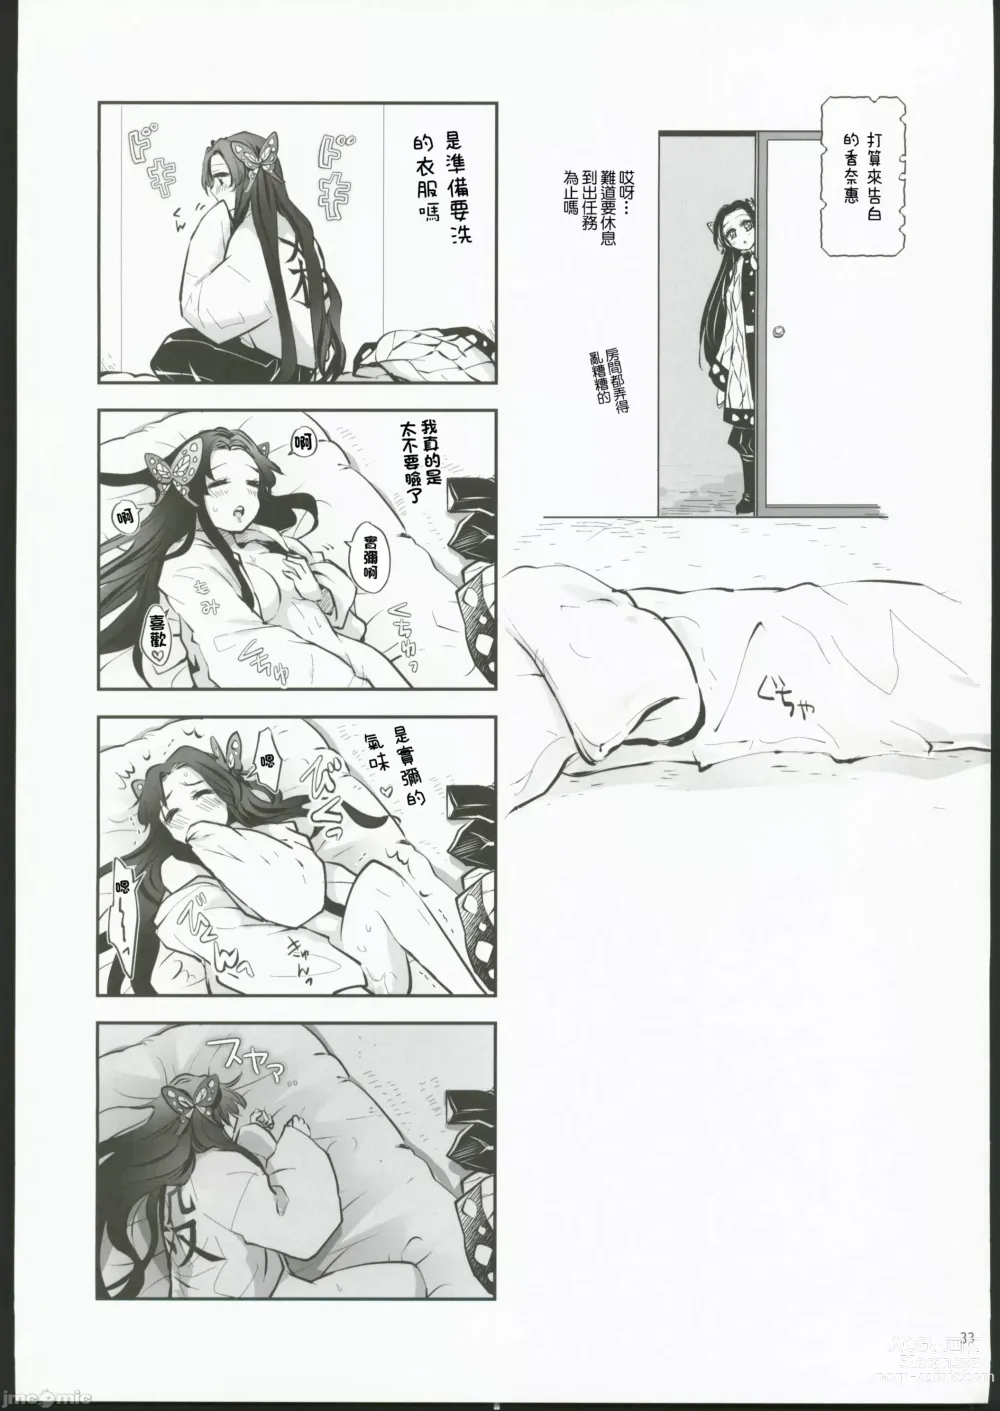 Page 32 of doujinshi Hana Matsu Yoikaze